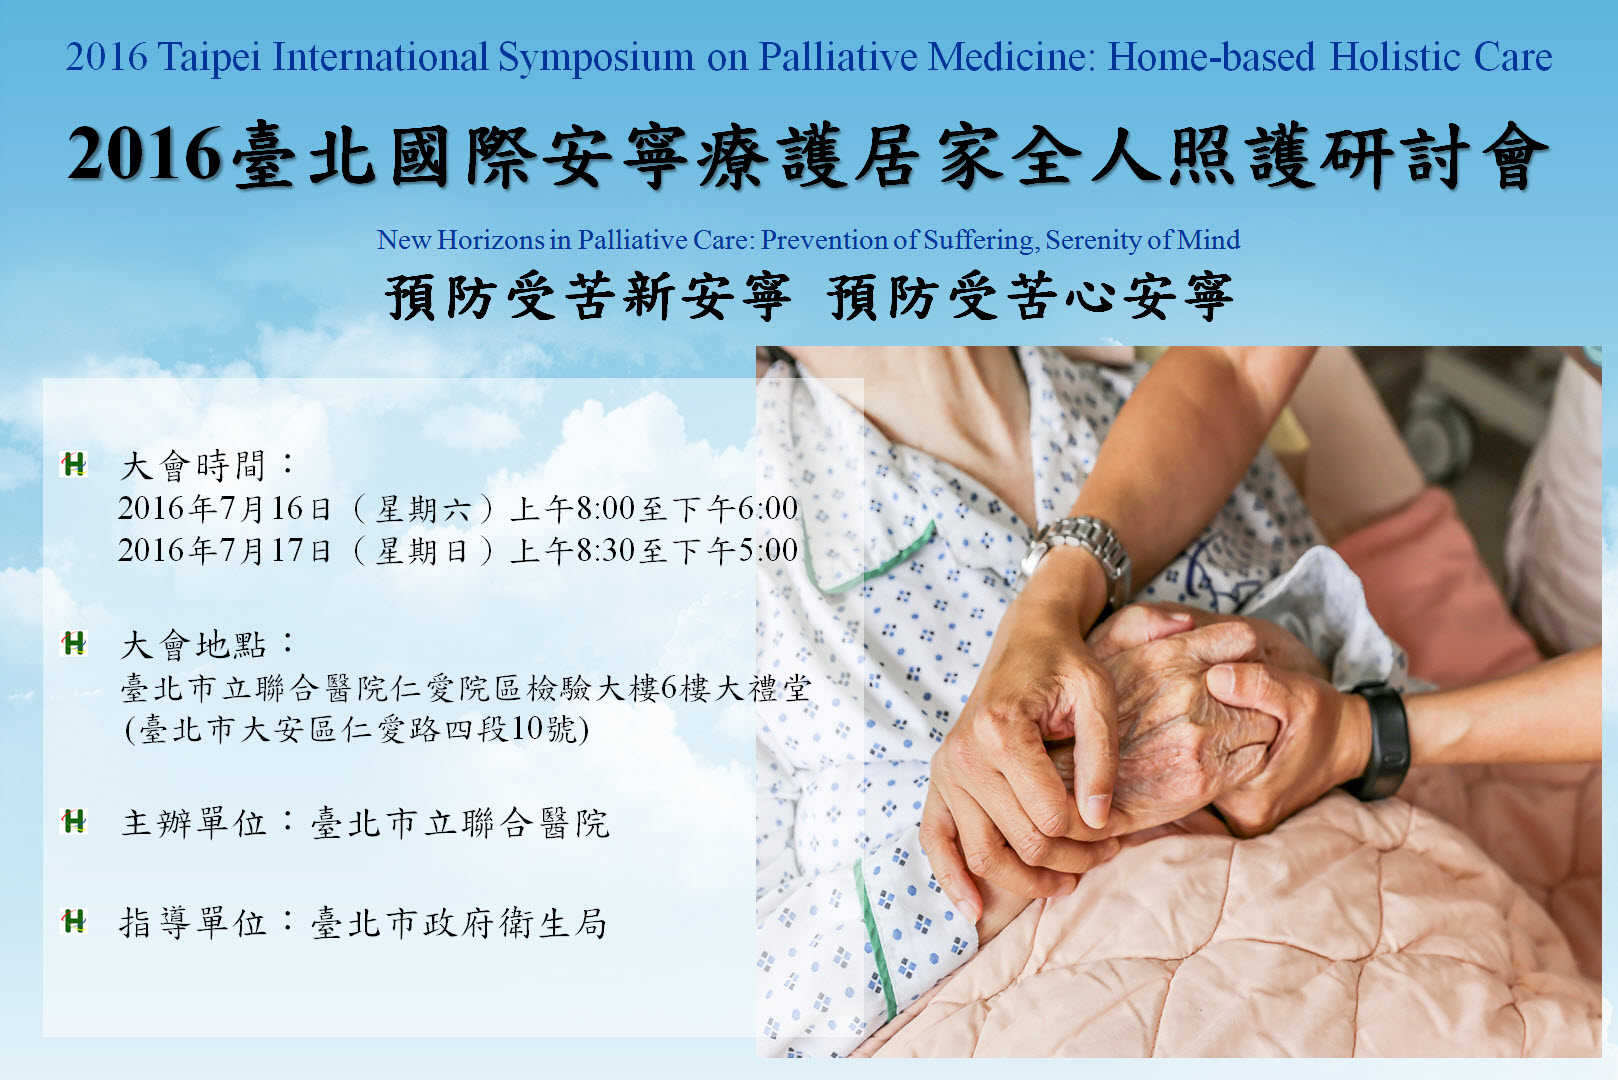 臺北市立聯合醫院 大會議程表